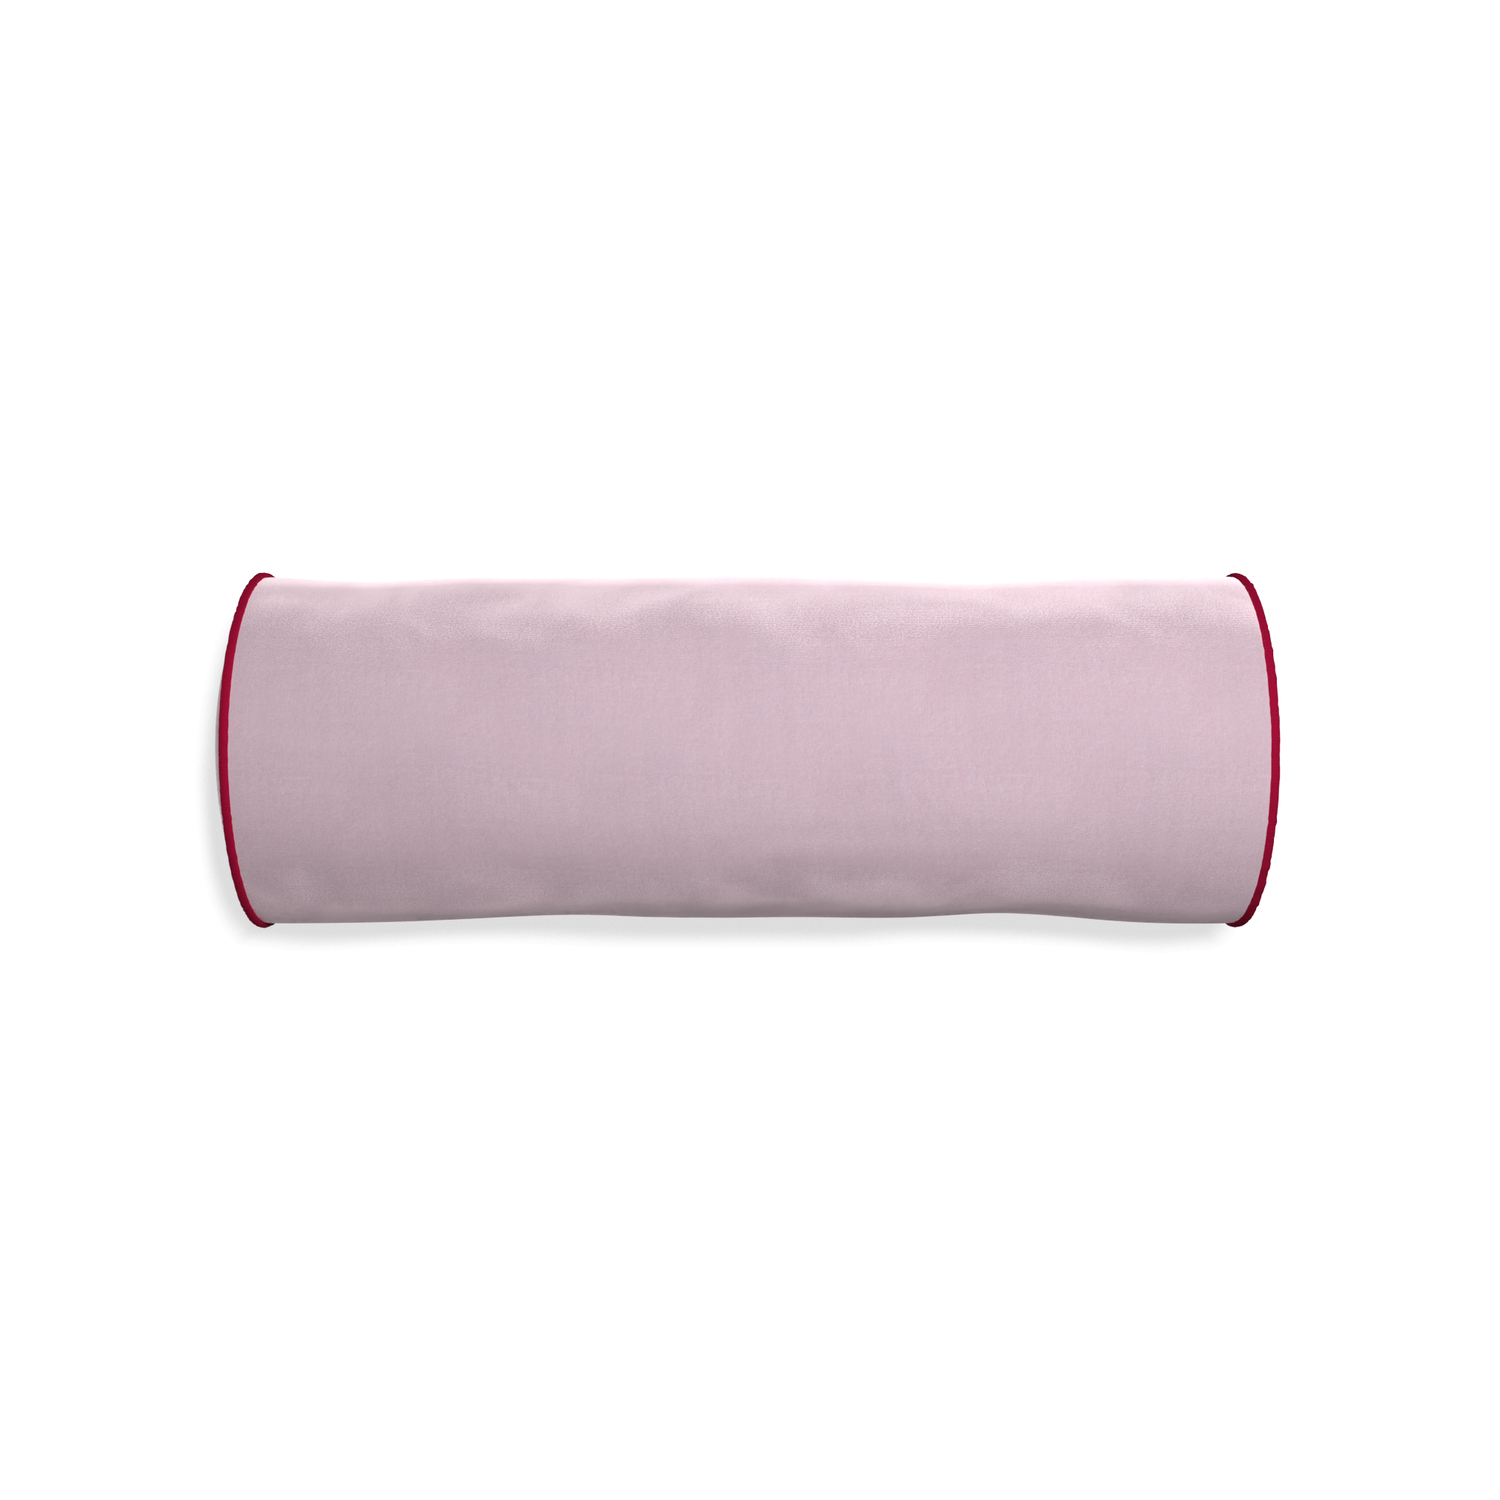 Bolster lilac velvet custom pillow with raspberry piping on white background